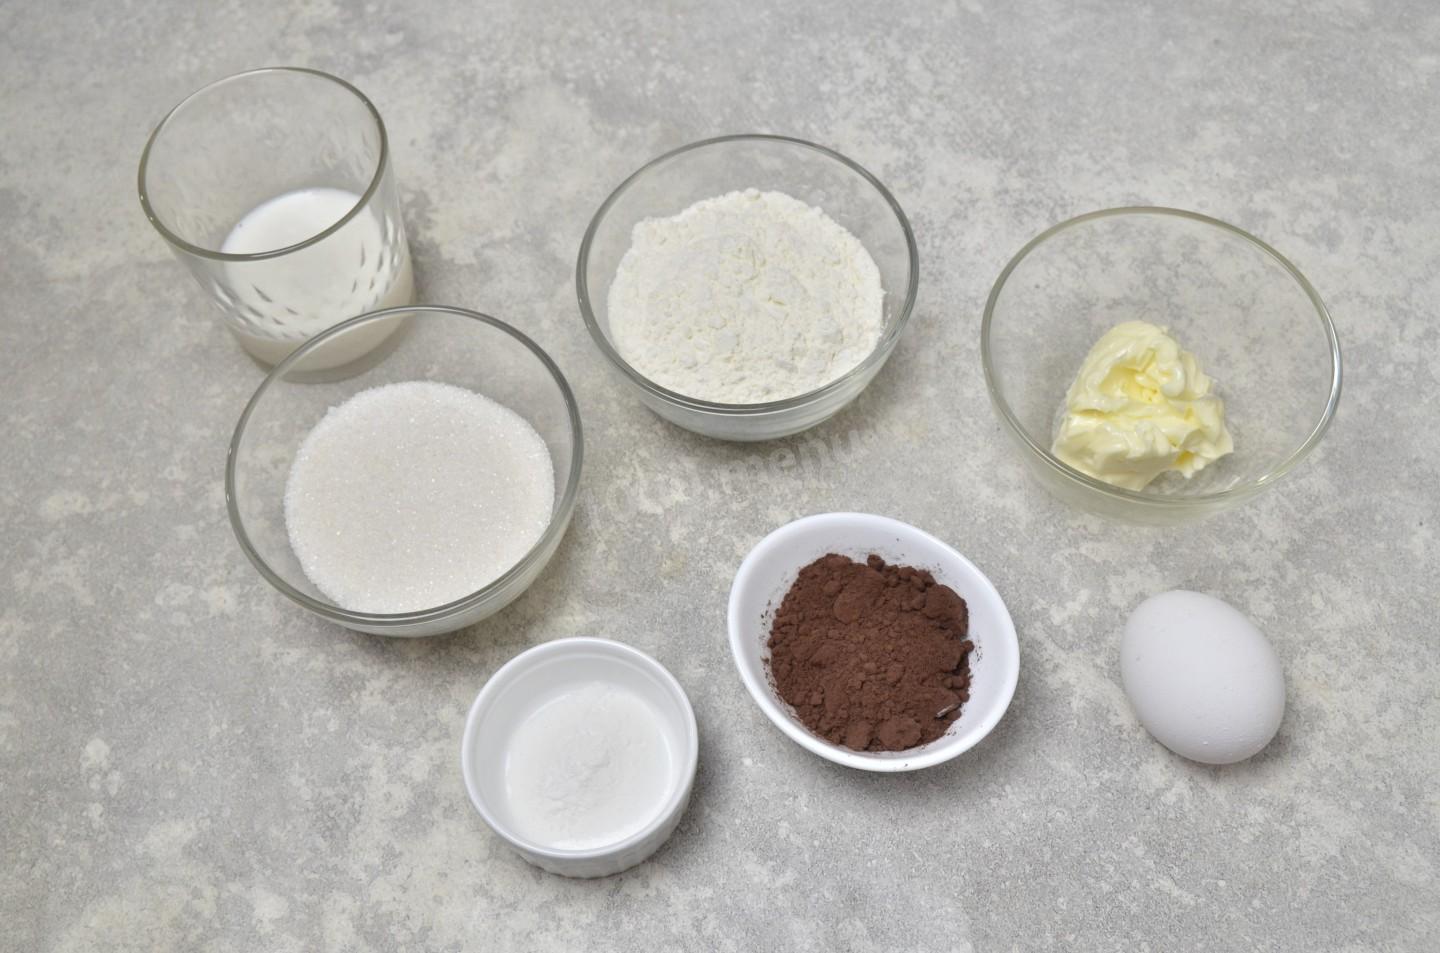 Яйцо масло сливочное сахар мука рецепт. Как сделать шоколад с солью. Фото для рецепта соль шоколад сахар сливки 4 яйца. Рецепт для толстый стать.